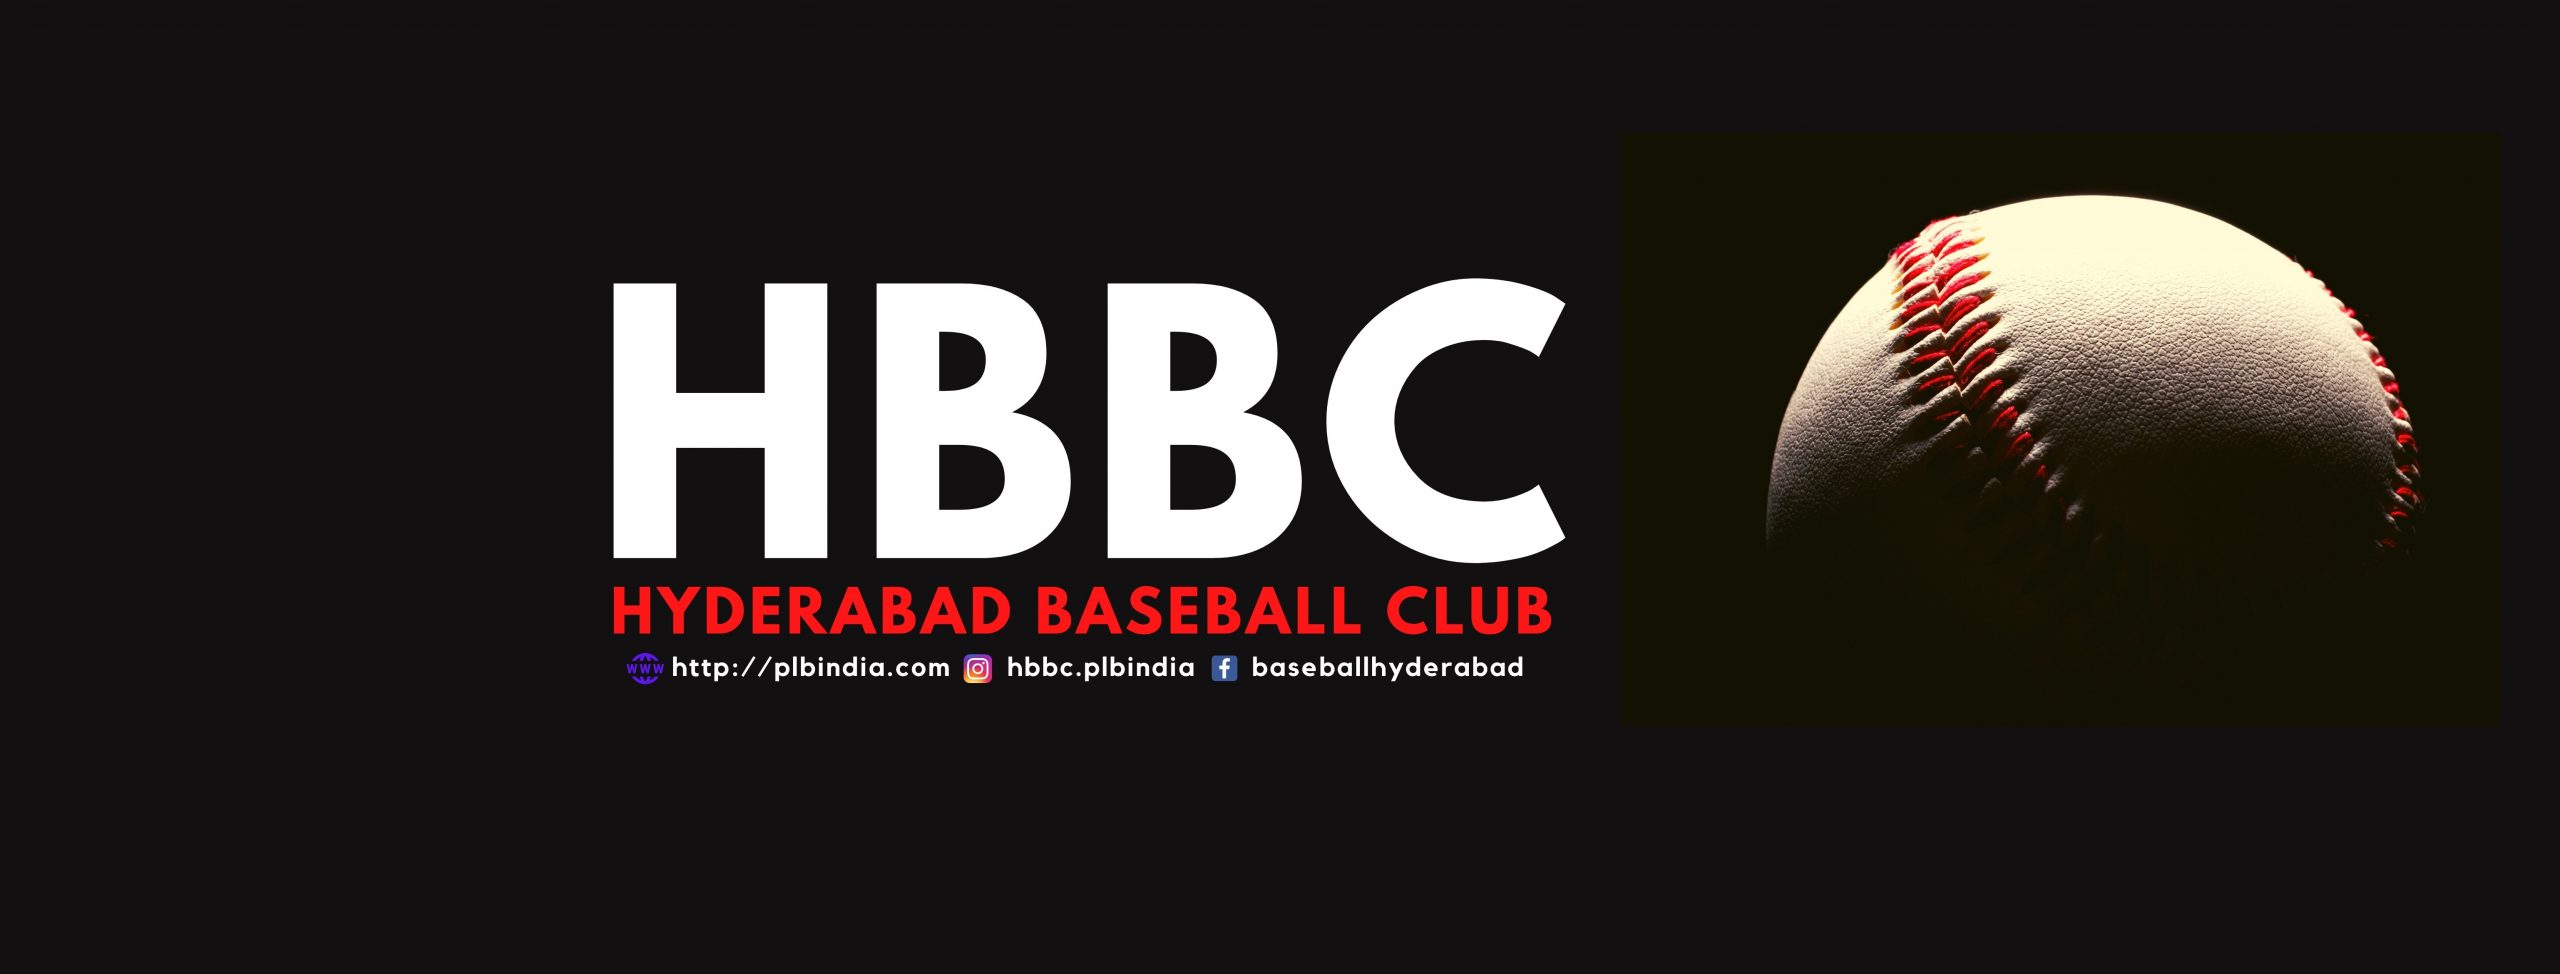 HBBC banner